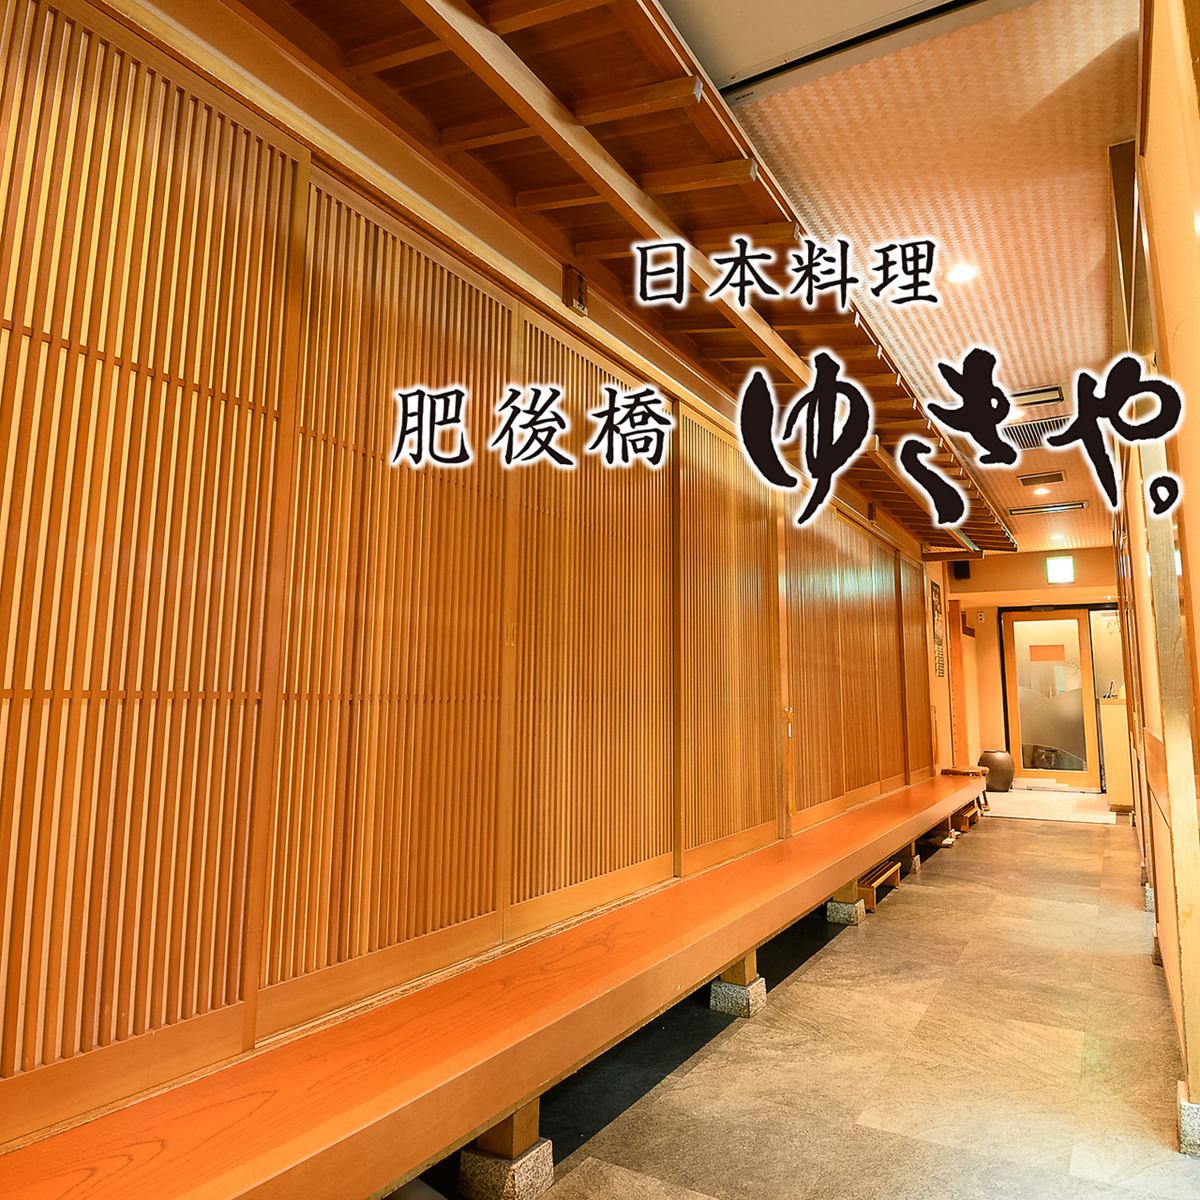 히고바시역 | 일본요리 유키의 맛을 부담없이 즐길 수 있다.완전 개인실 완비/접대・연회에 최적.